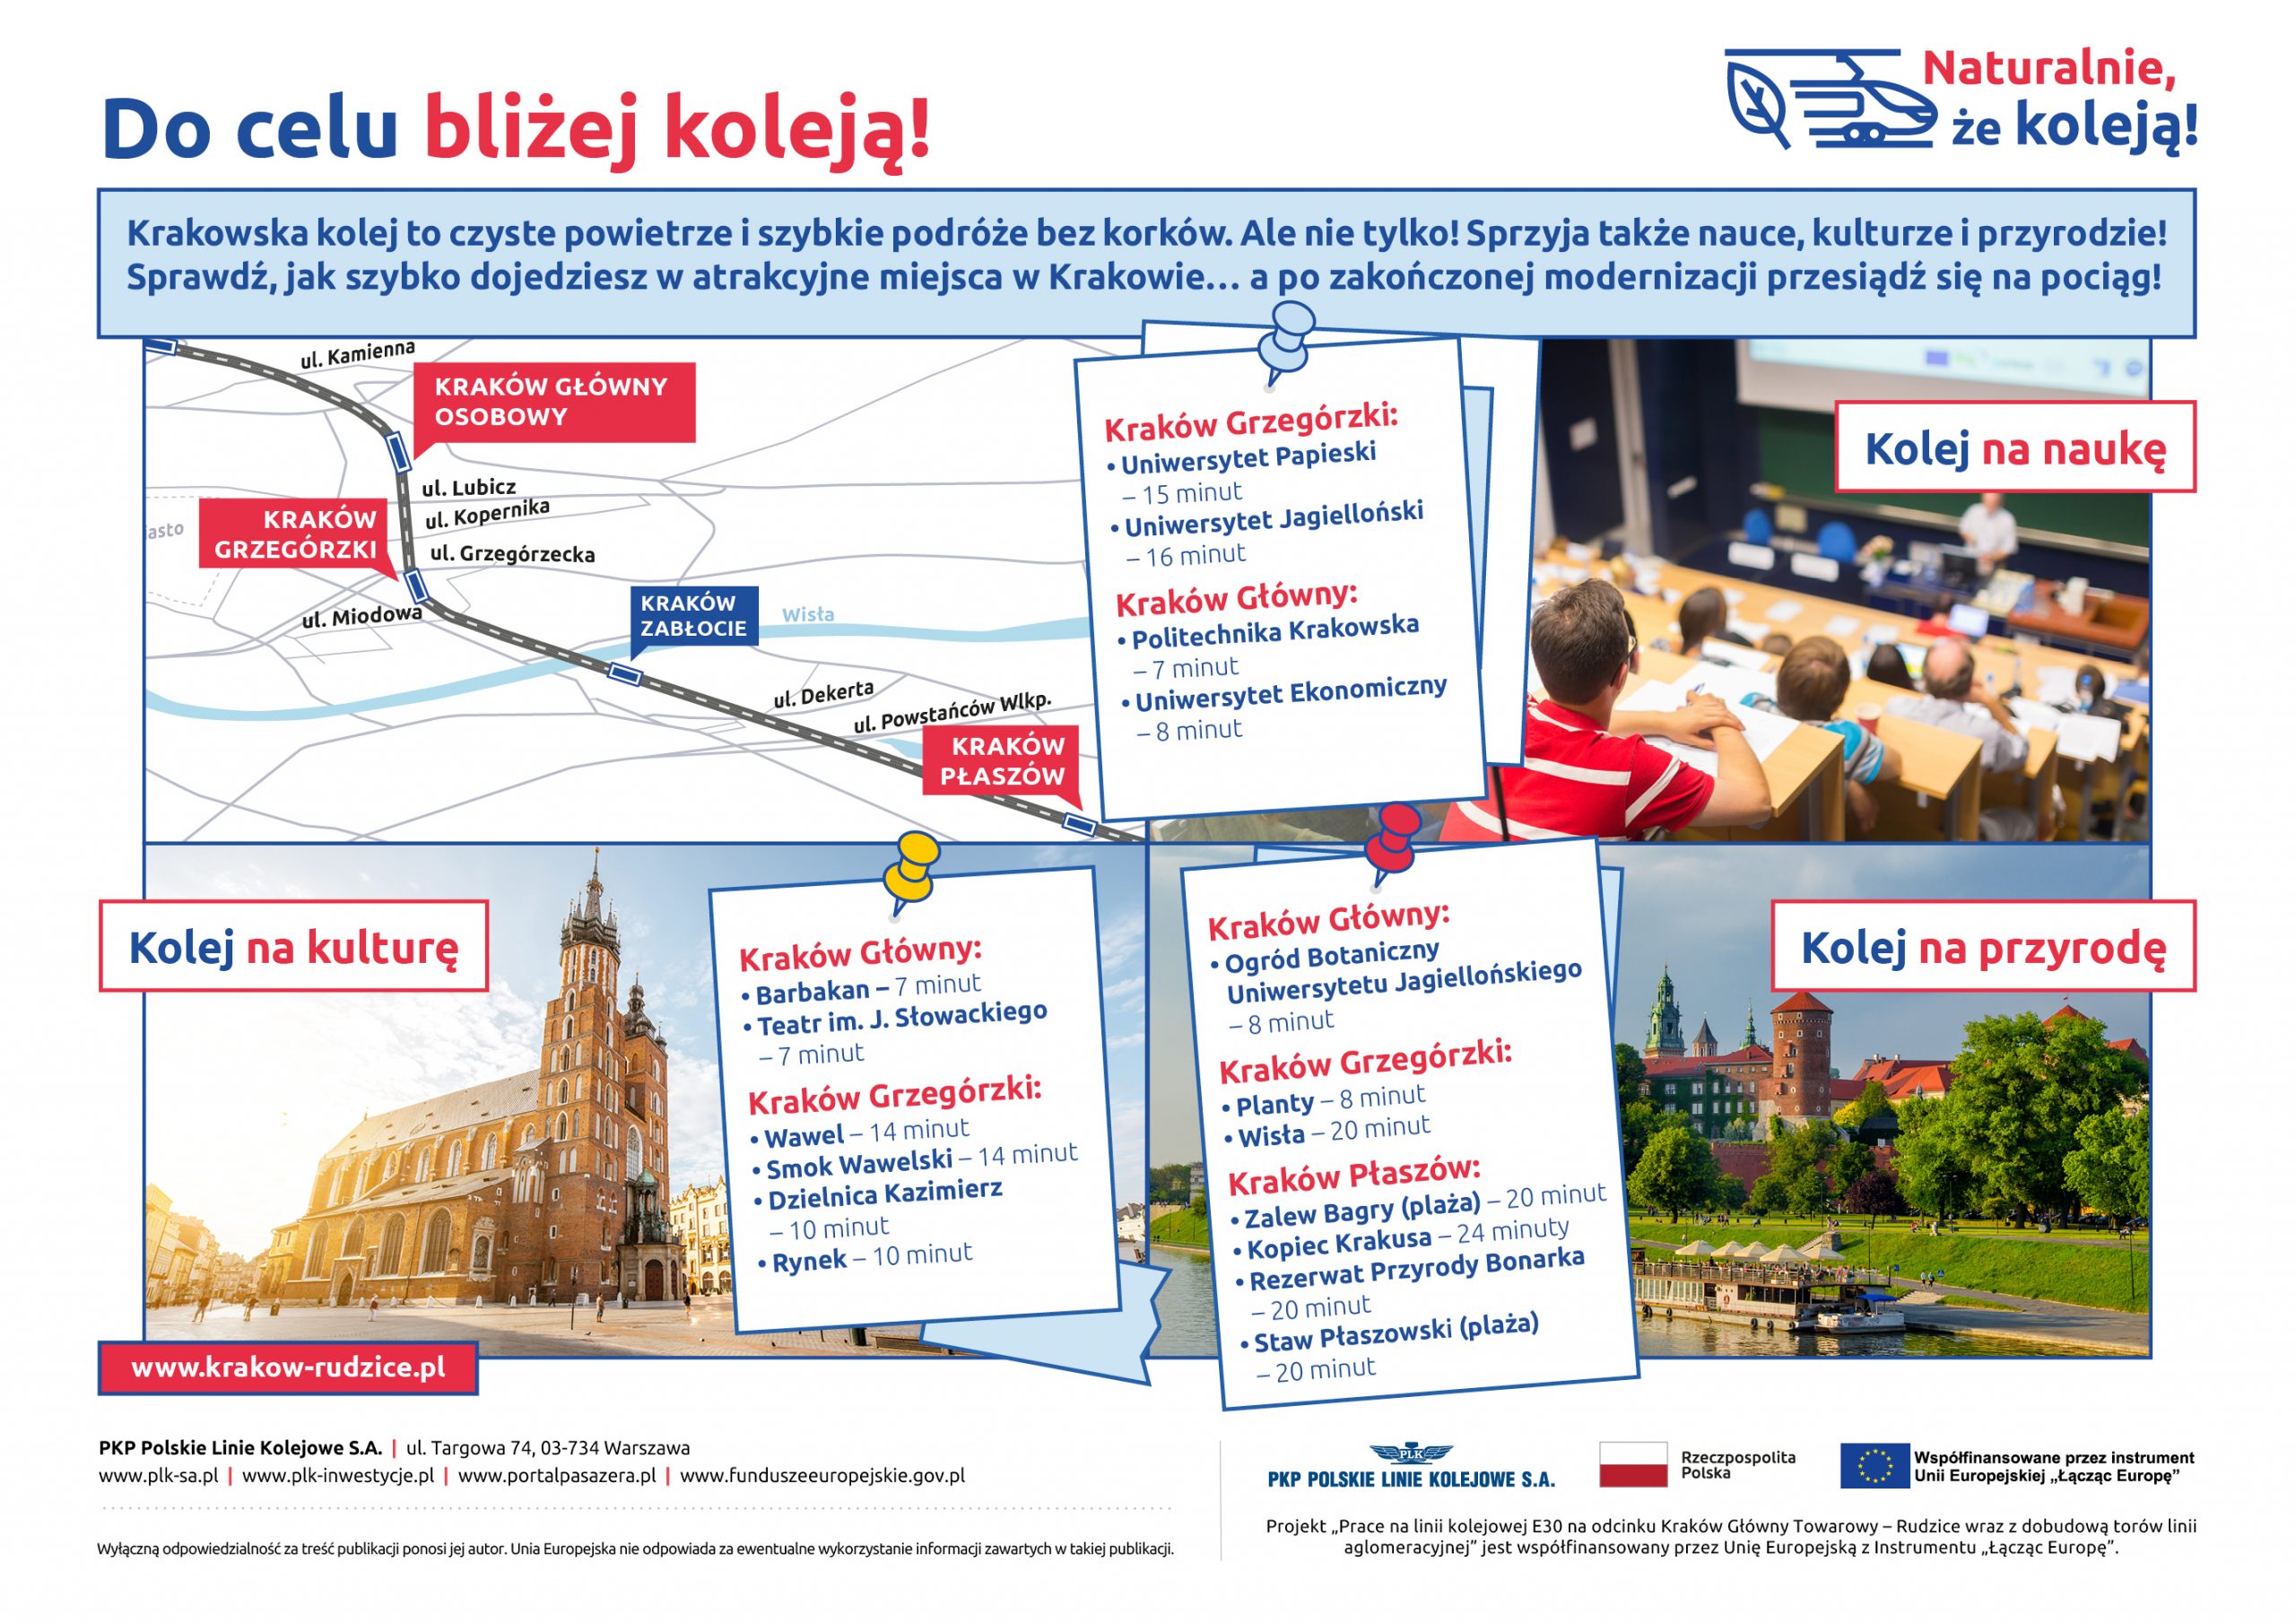 Infografika z cyklu Naturalnie, że koleją obrazująca korzyści w dostępie do edukacji, kultury i rekreacji dzięki modernizacji linii kolejowej w Krakowie.